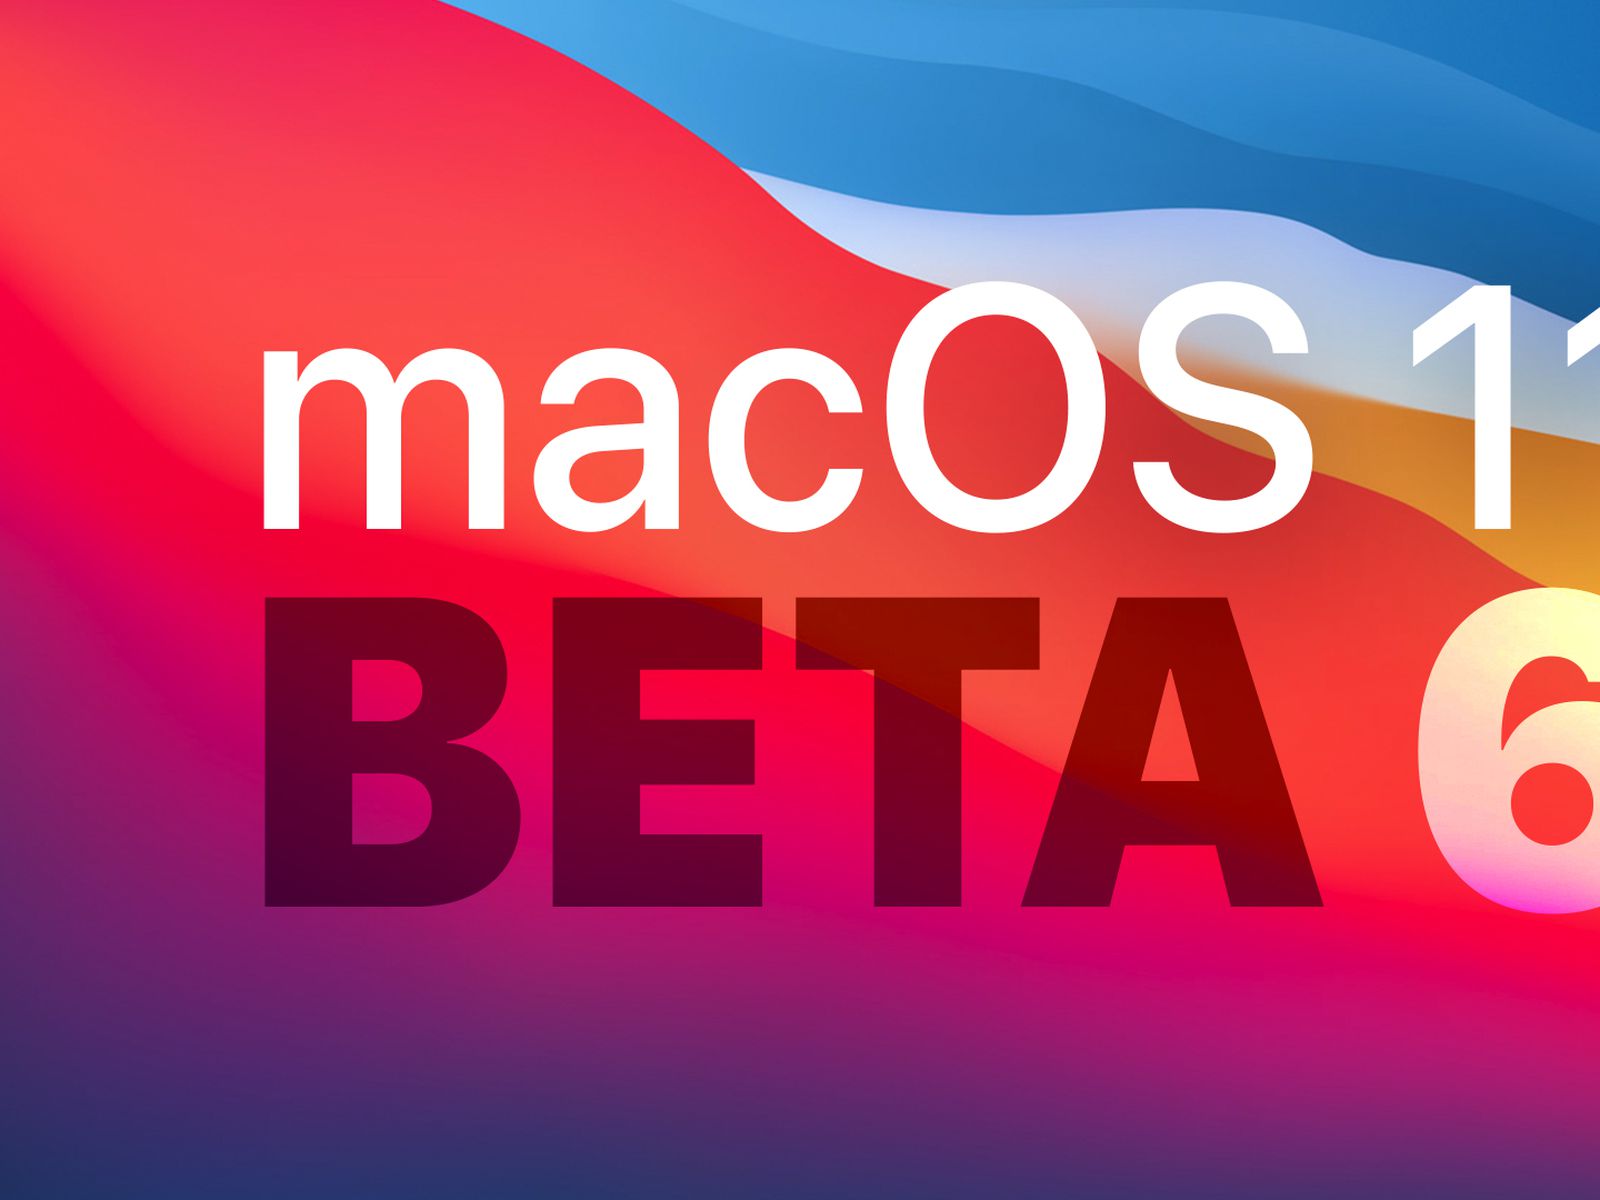 macos developer download